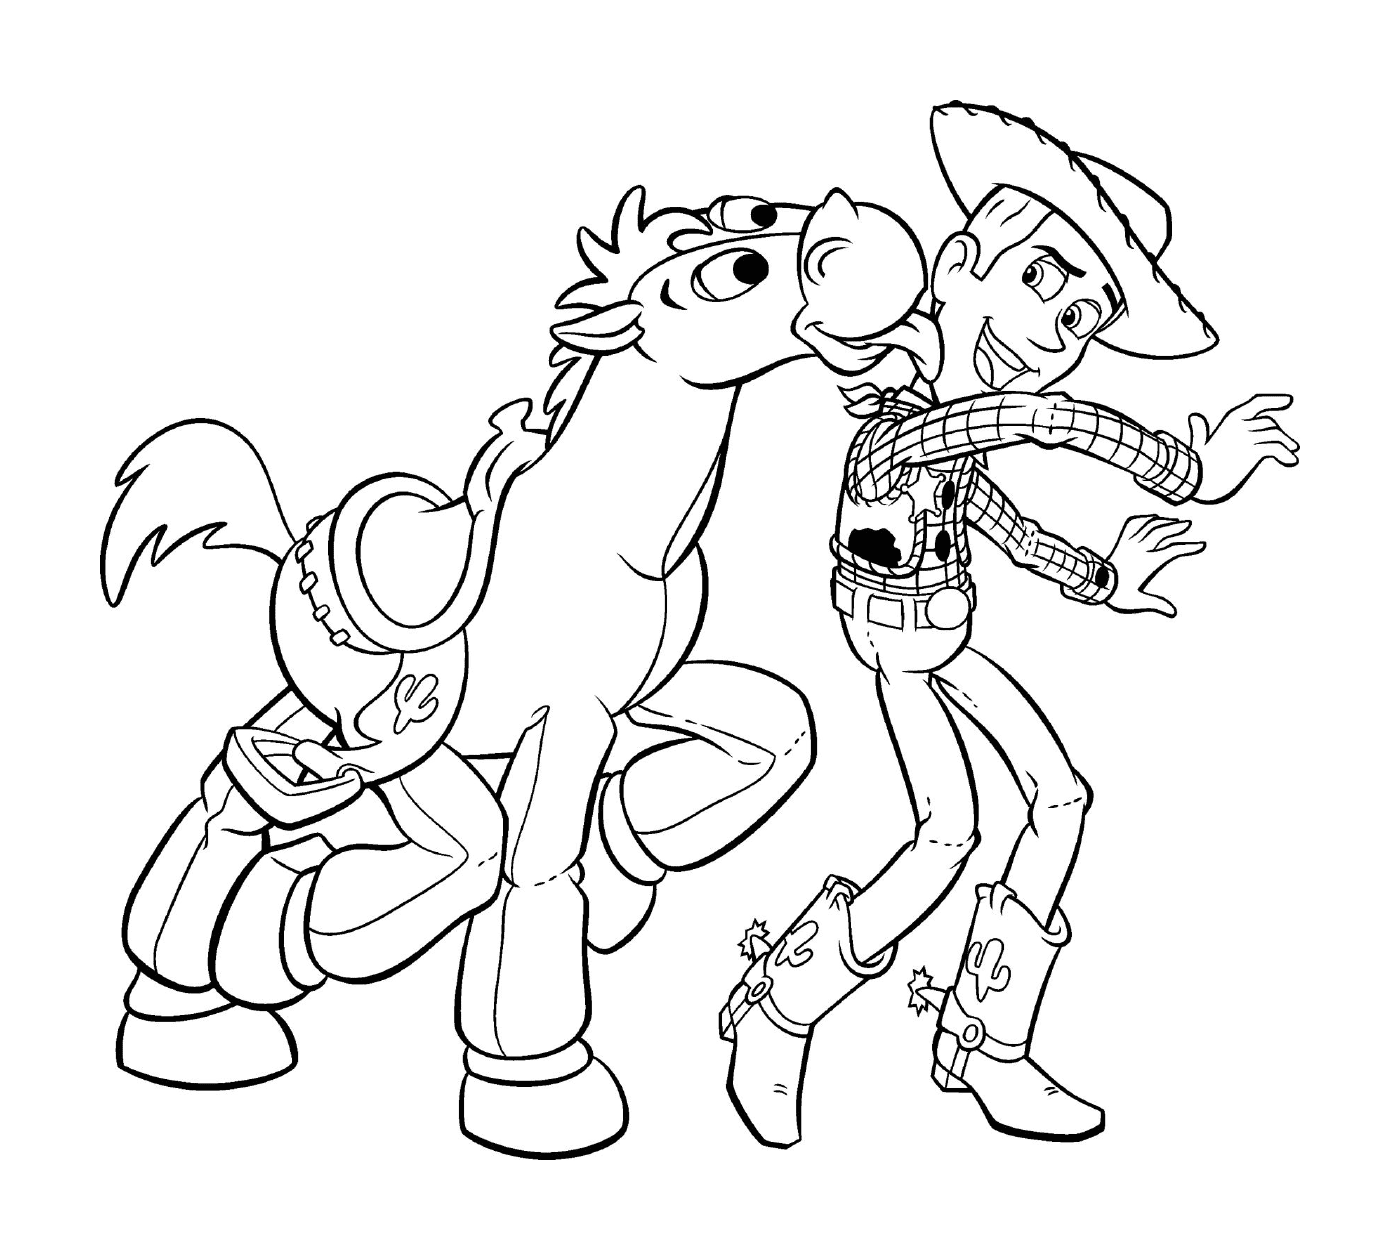   Un cow-boy et un cheval 